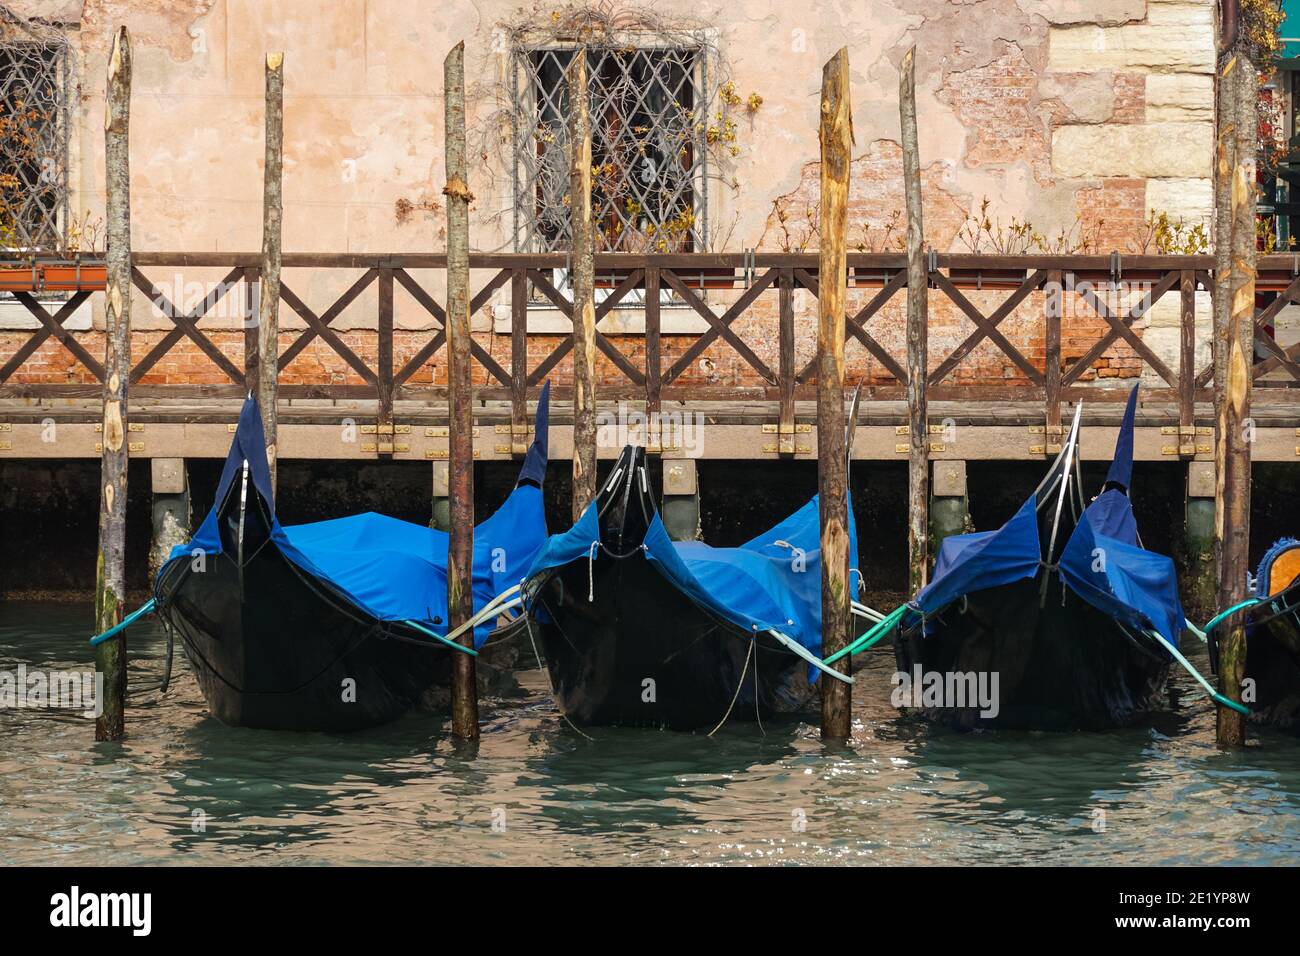 Gondole veneziane tradizionali ormeggiate sul Canal Grande a Venezia, Italia Foto Stock